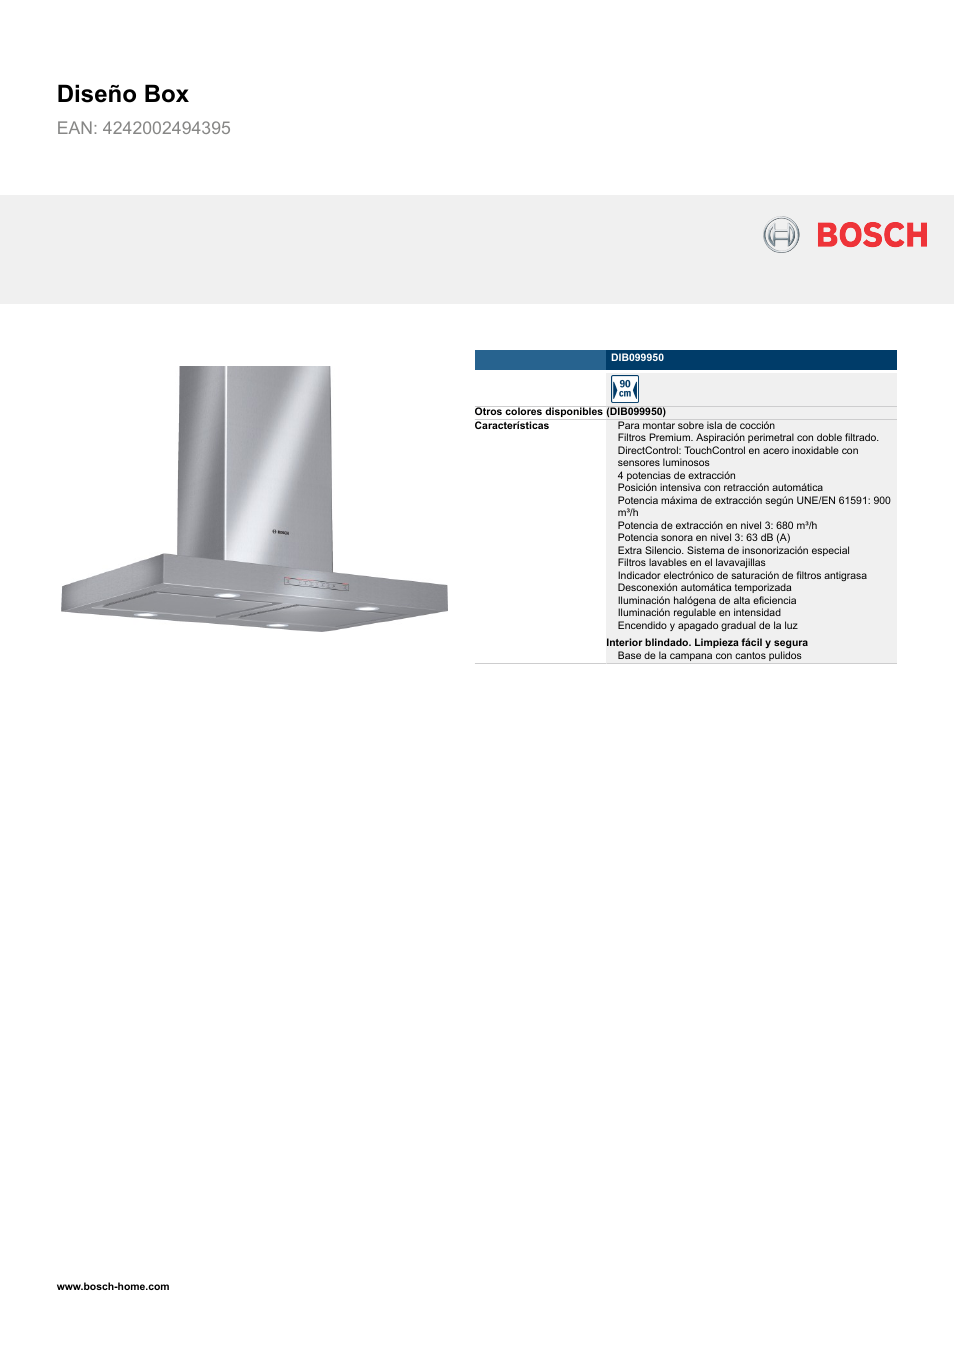 Bosch DIB099950 Diseño Box EAN 4242002494395 Ancho 90 cm Manual del usuario | Páginas: 3